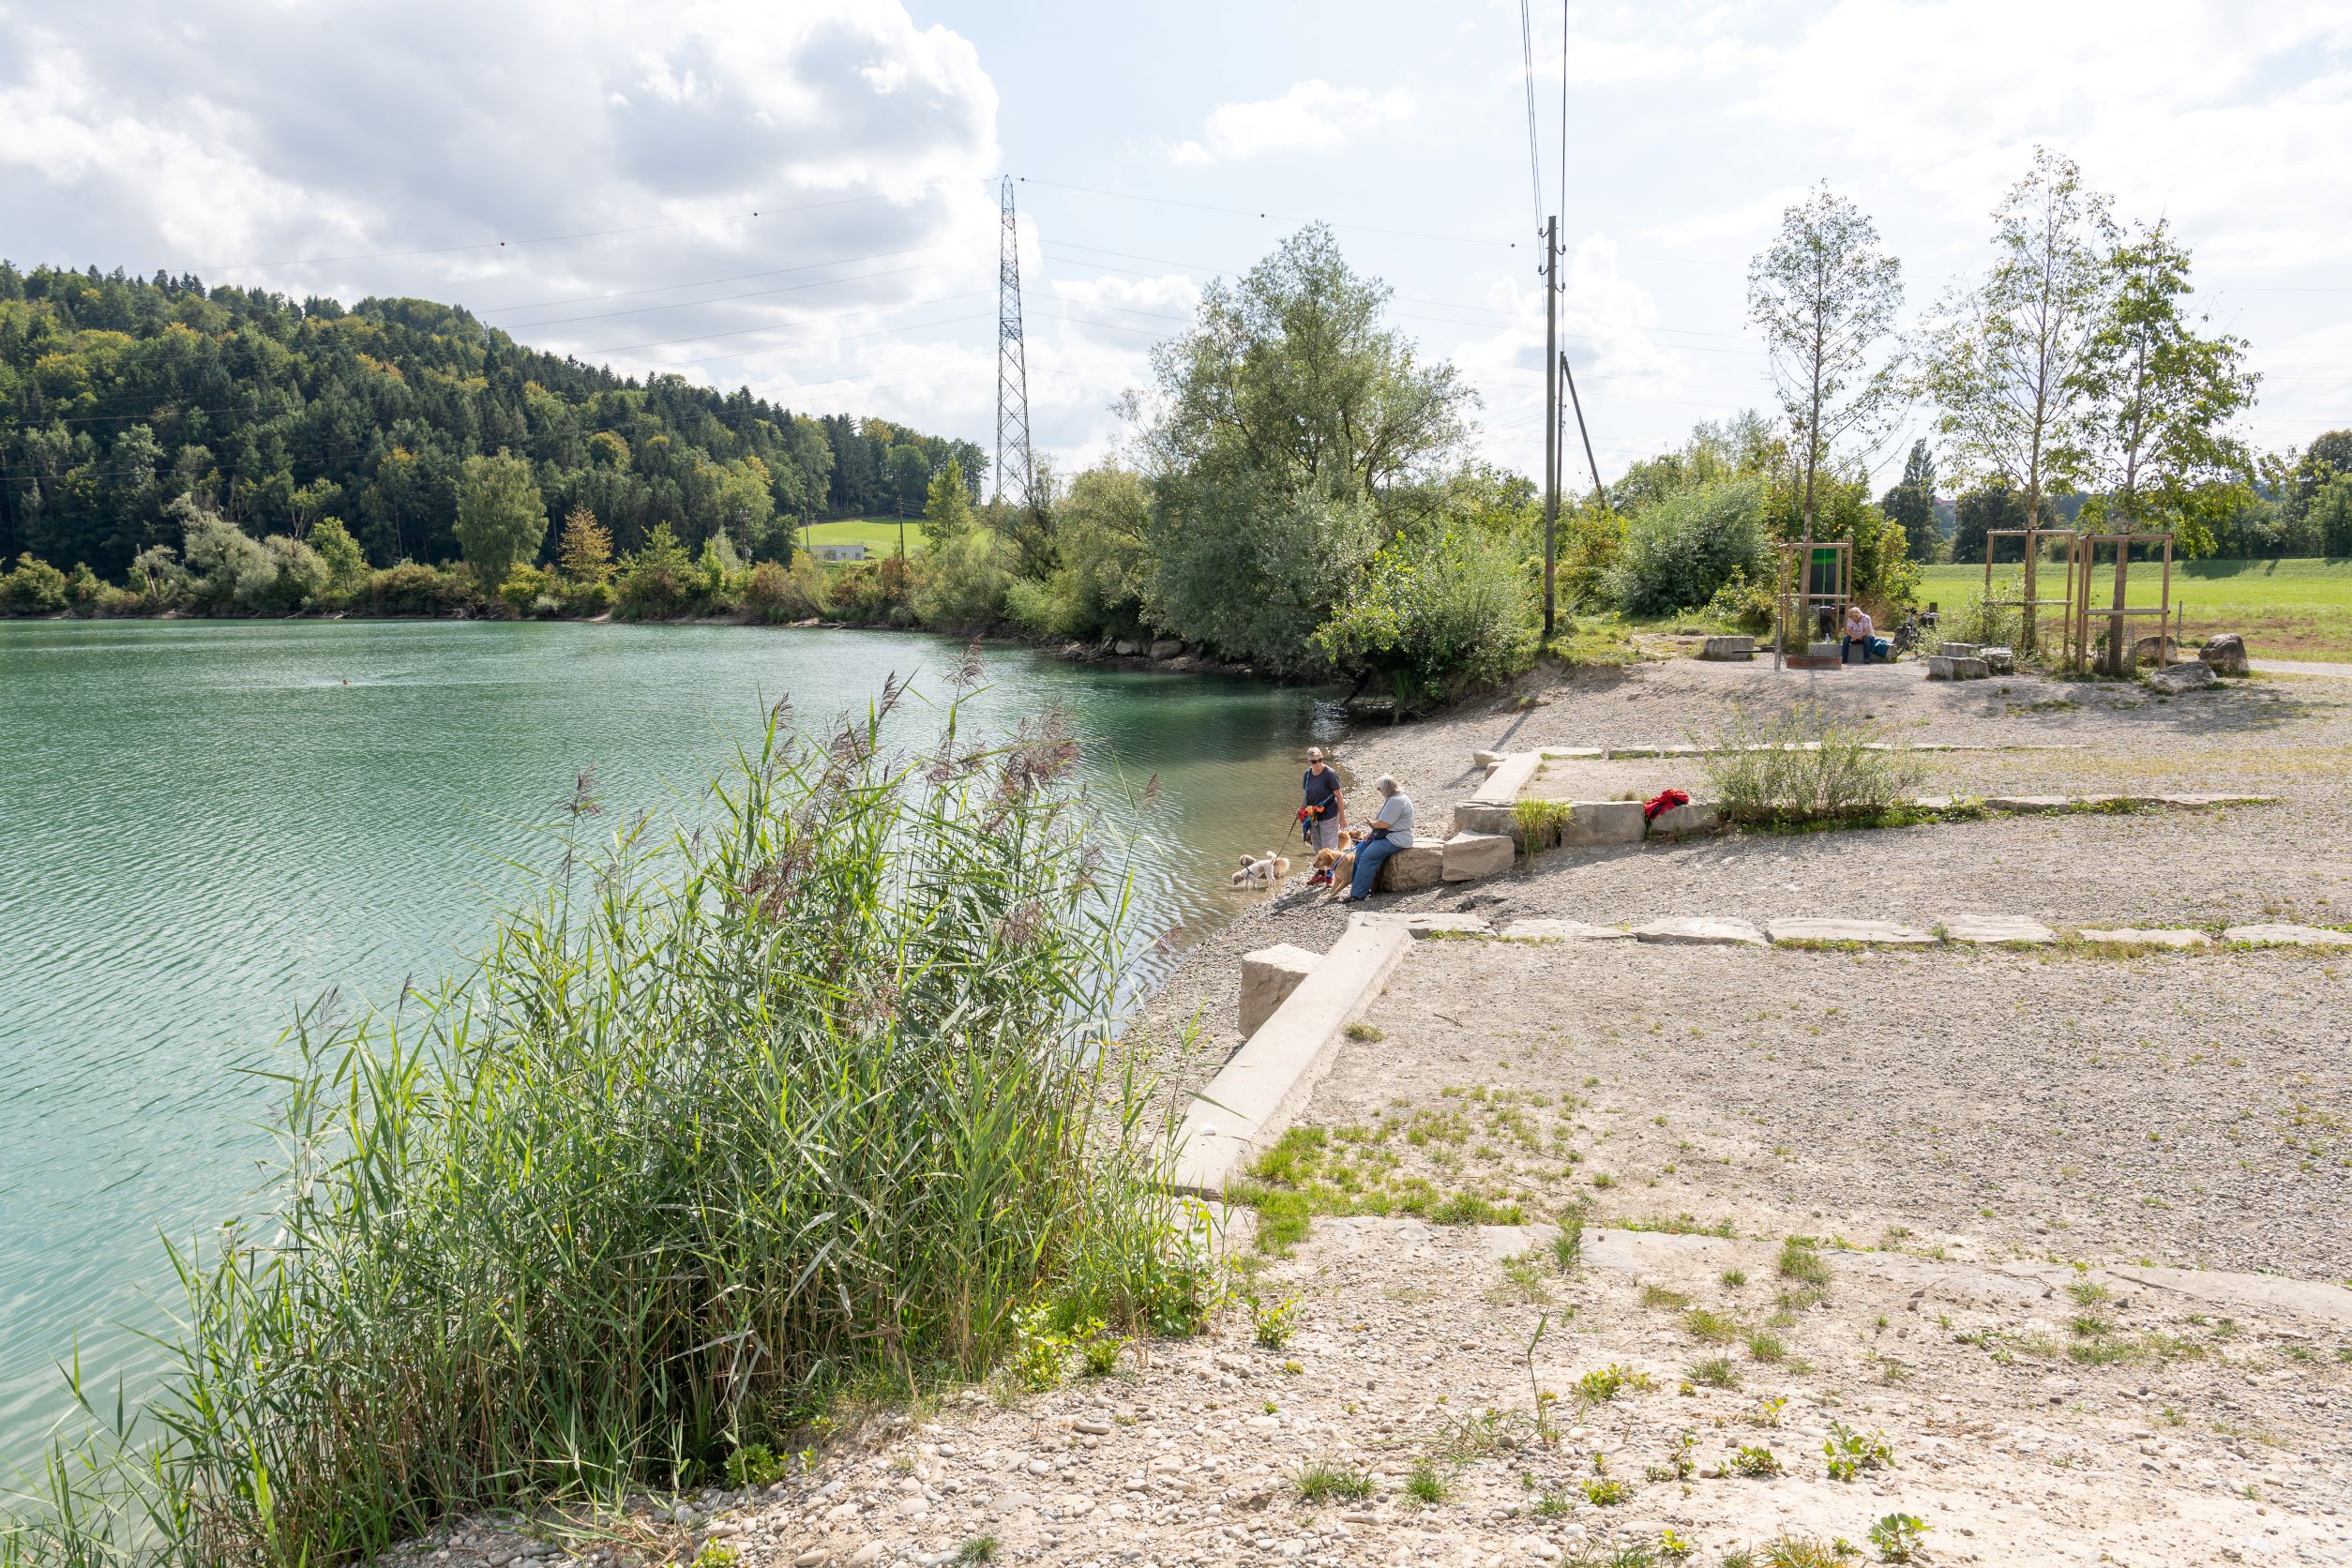 Mühleberg, Rewag, Freifläche (Beispiel See- und Flussufer-Projekt Tiefbauamt Kanton Bern), Bild: B. Devènes, 2021